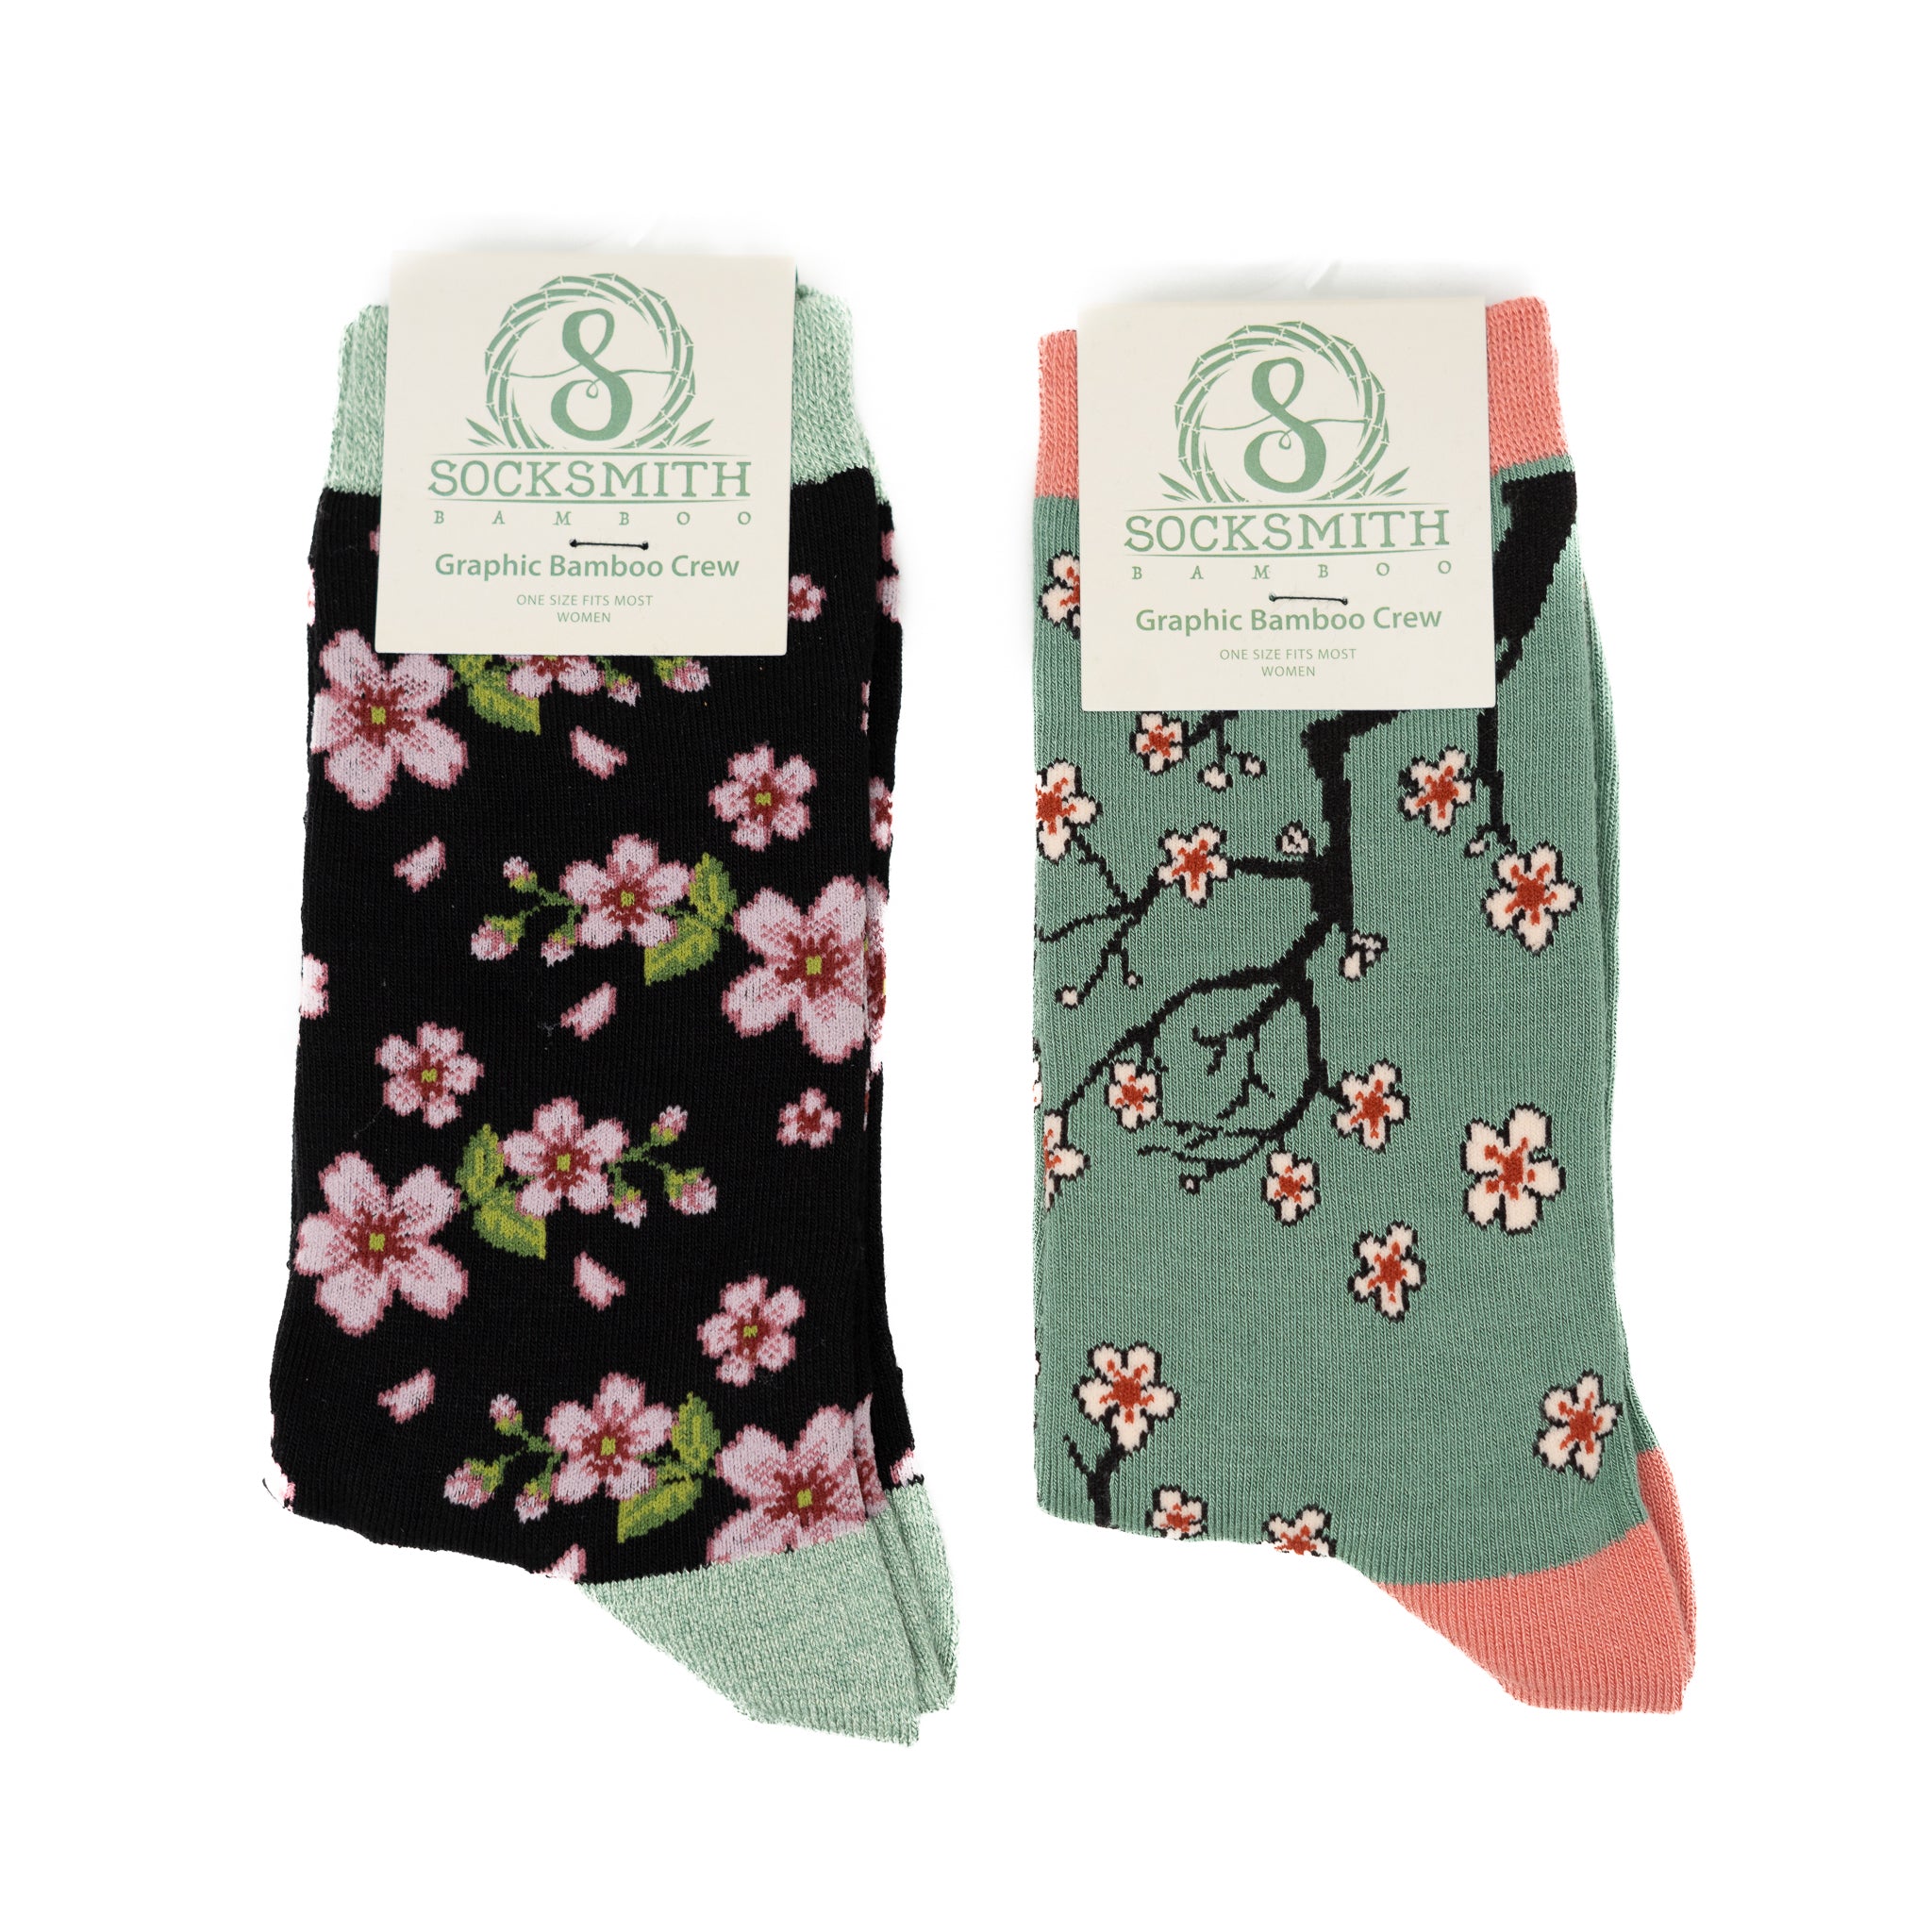 Cherry Blossom Socks (Women's)